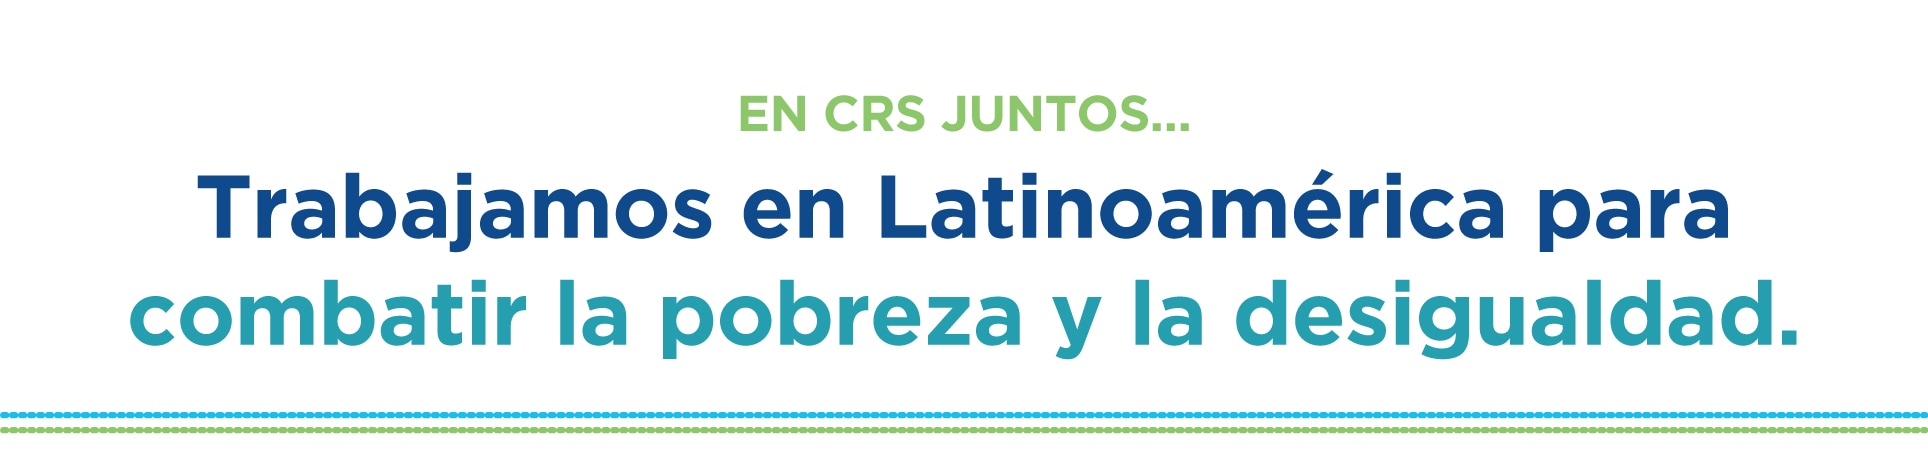 En CRS juntos... Trabajamos en Latinoamérica para combatir la probreza y la desigualdad.